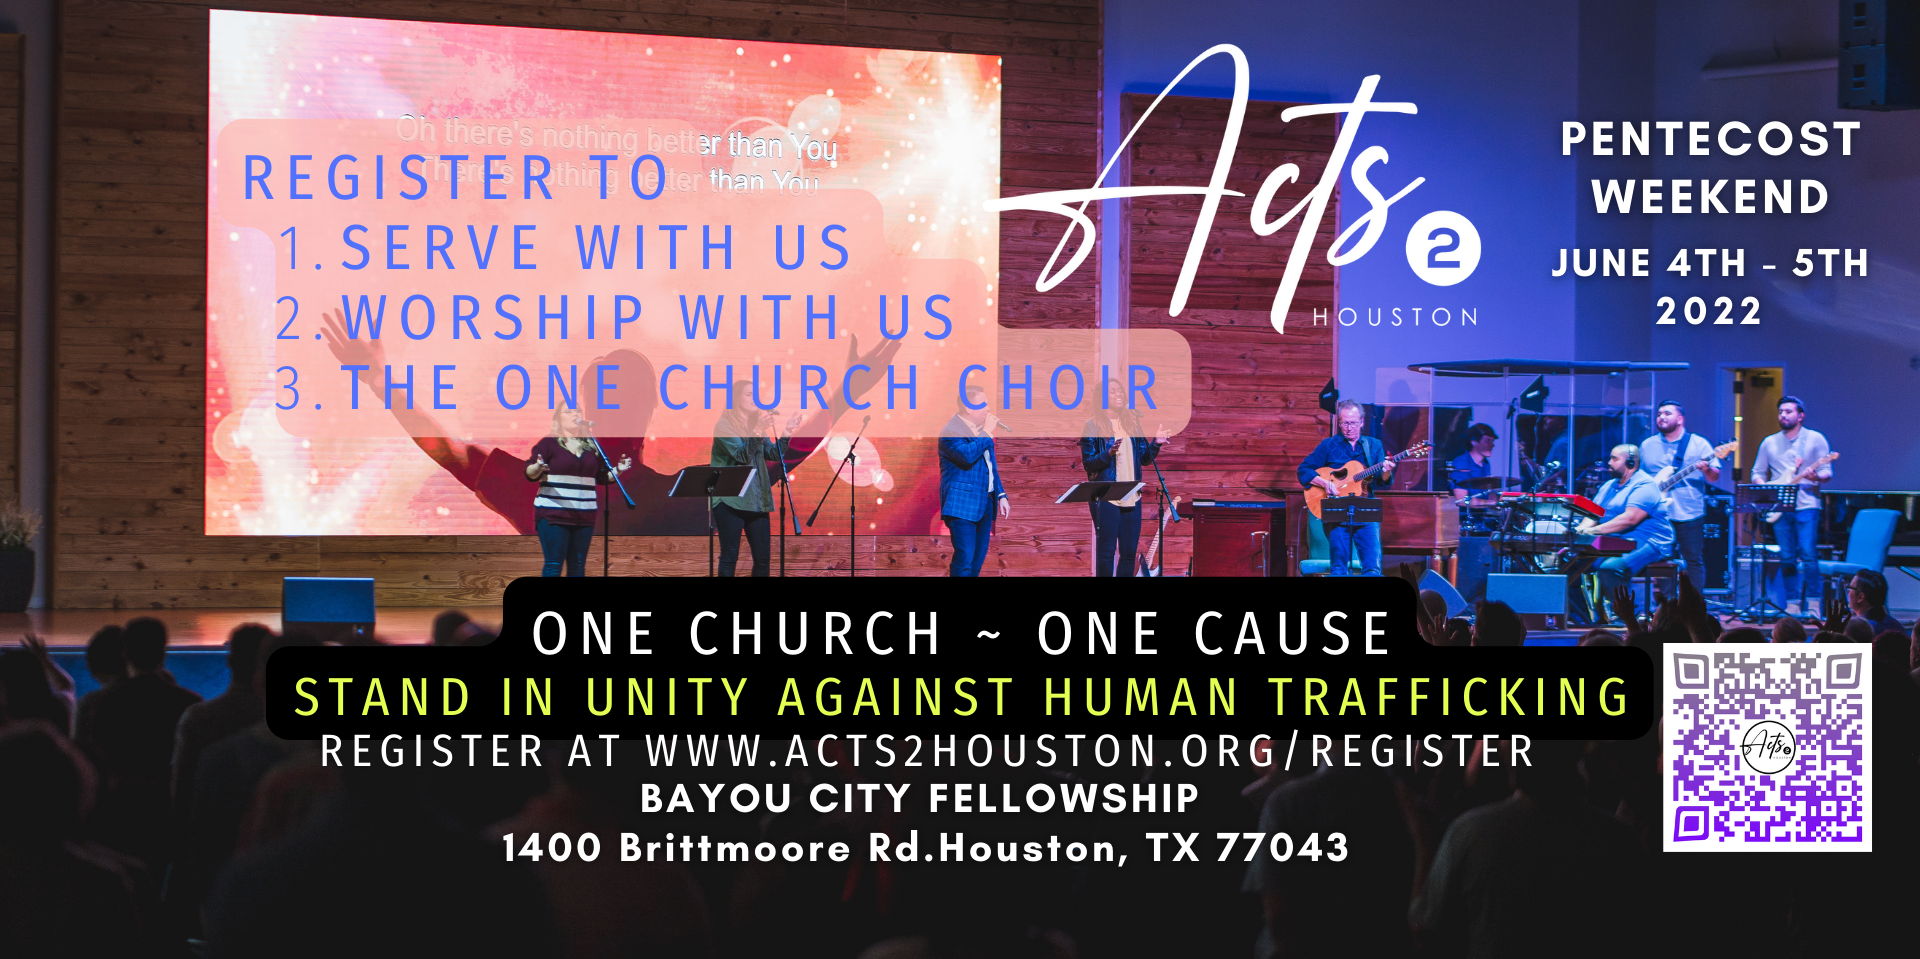 Acts 2 Houston 2022 promotional image